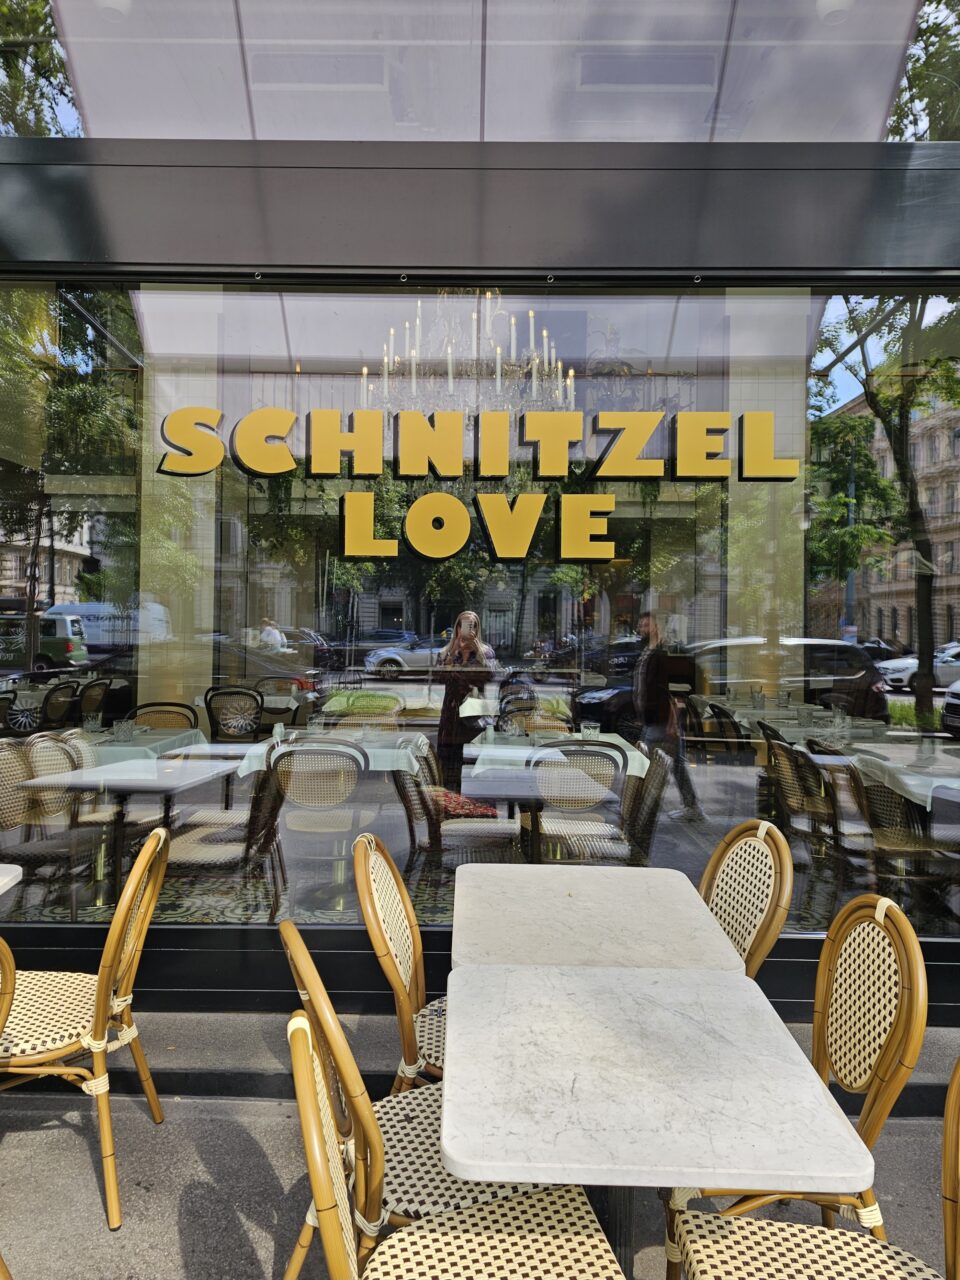 Restaurantvindu med teksten "Schnitzel Love". Foto